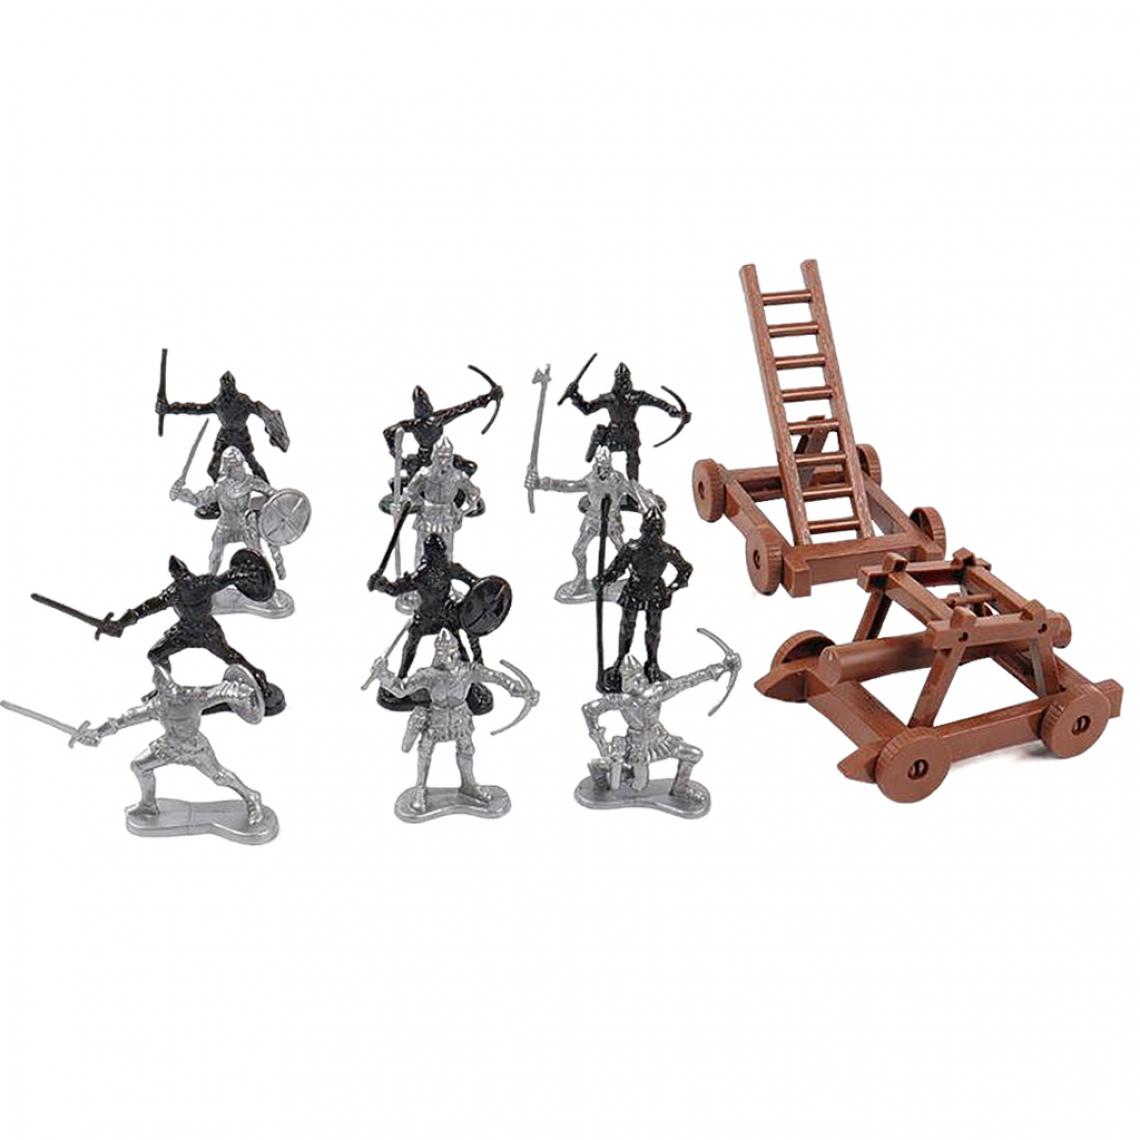 marque generique - Figurines D'action Militaire Armée Hommes Soldats Playset Table De Sable Scène Jouer 22 Pièces - Guerriers